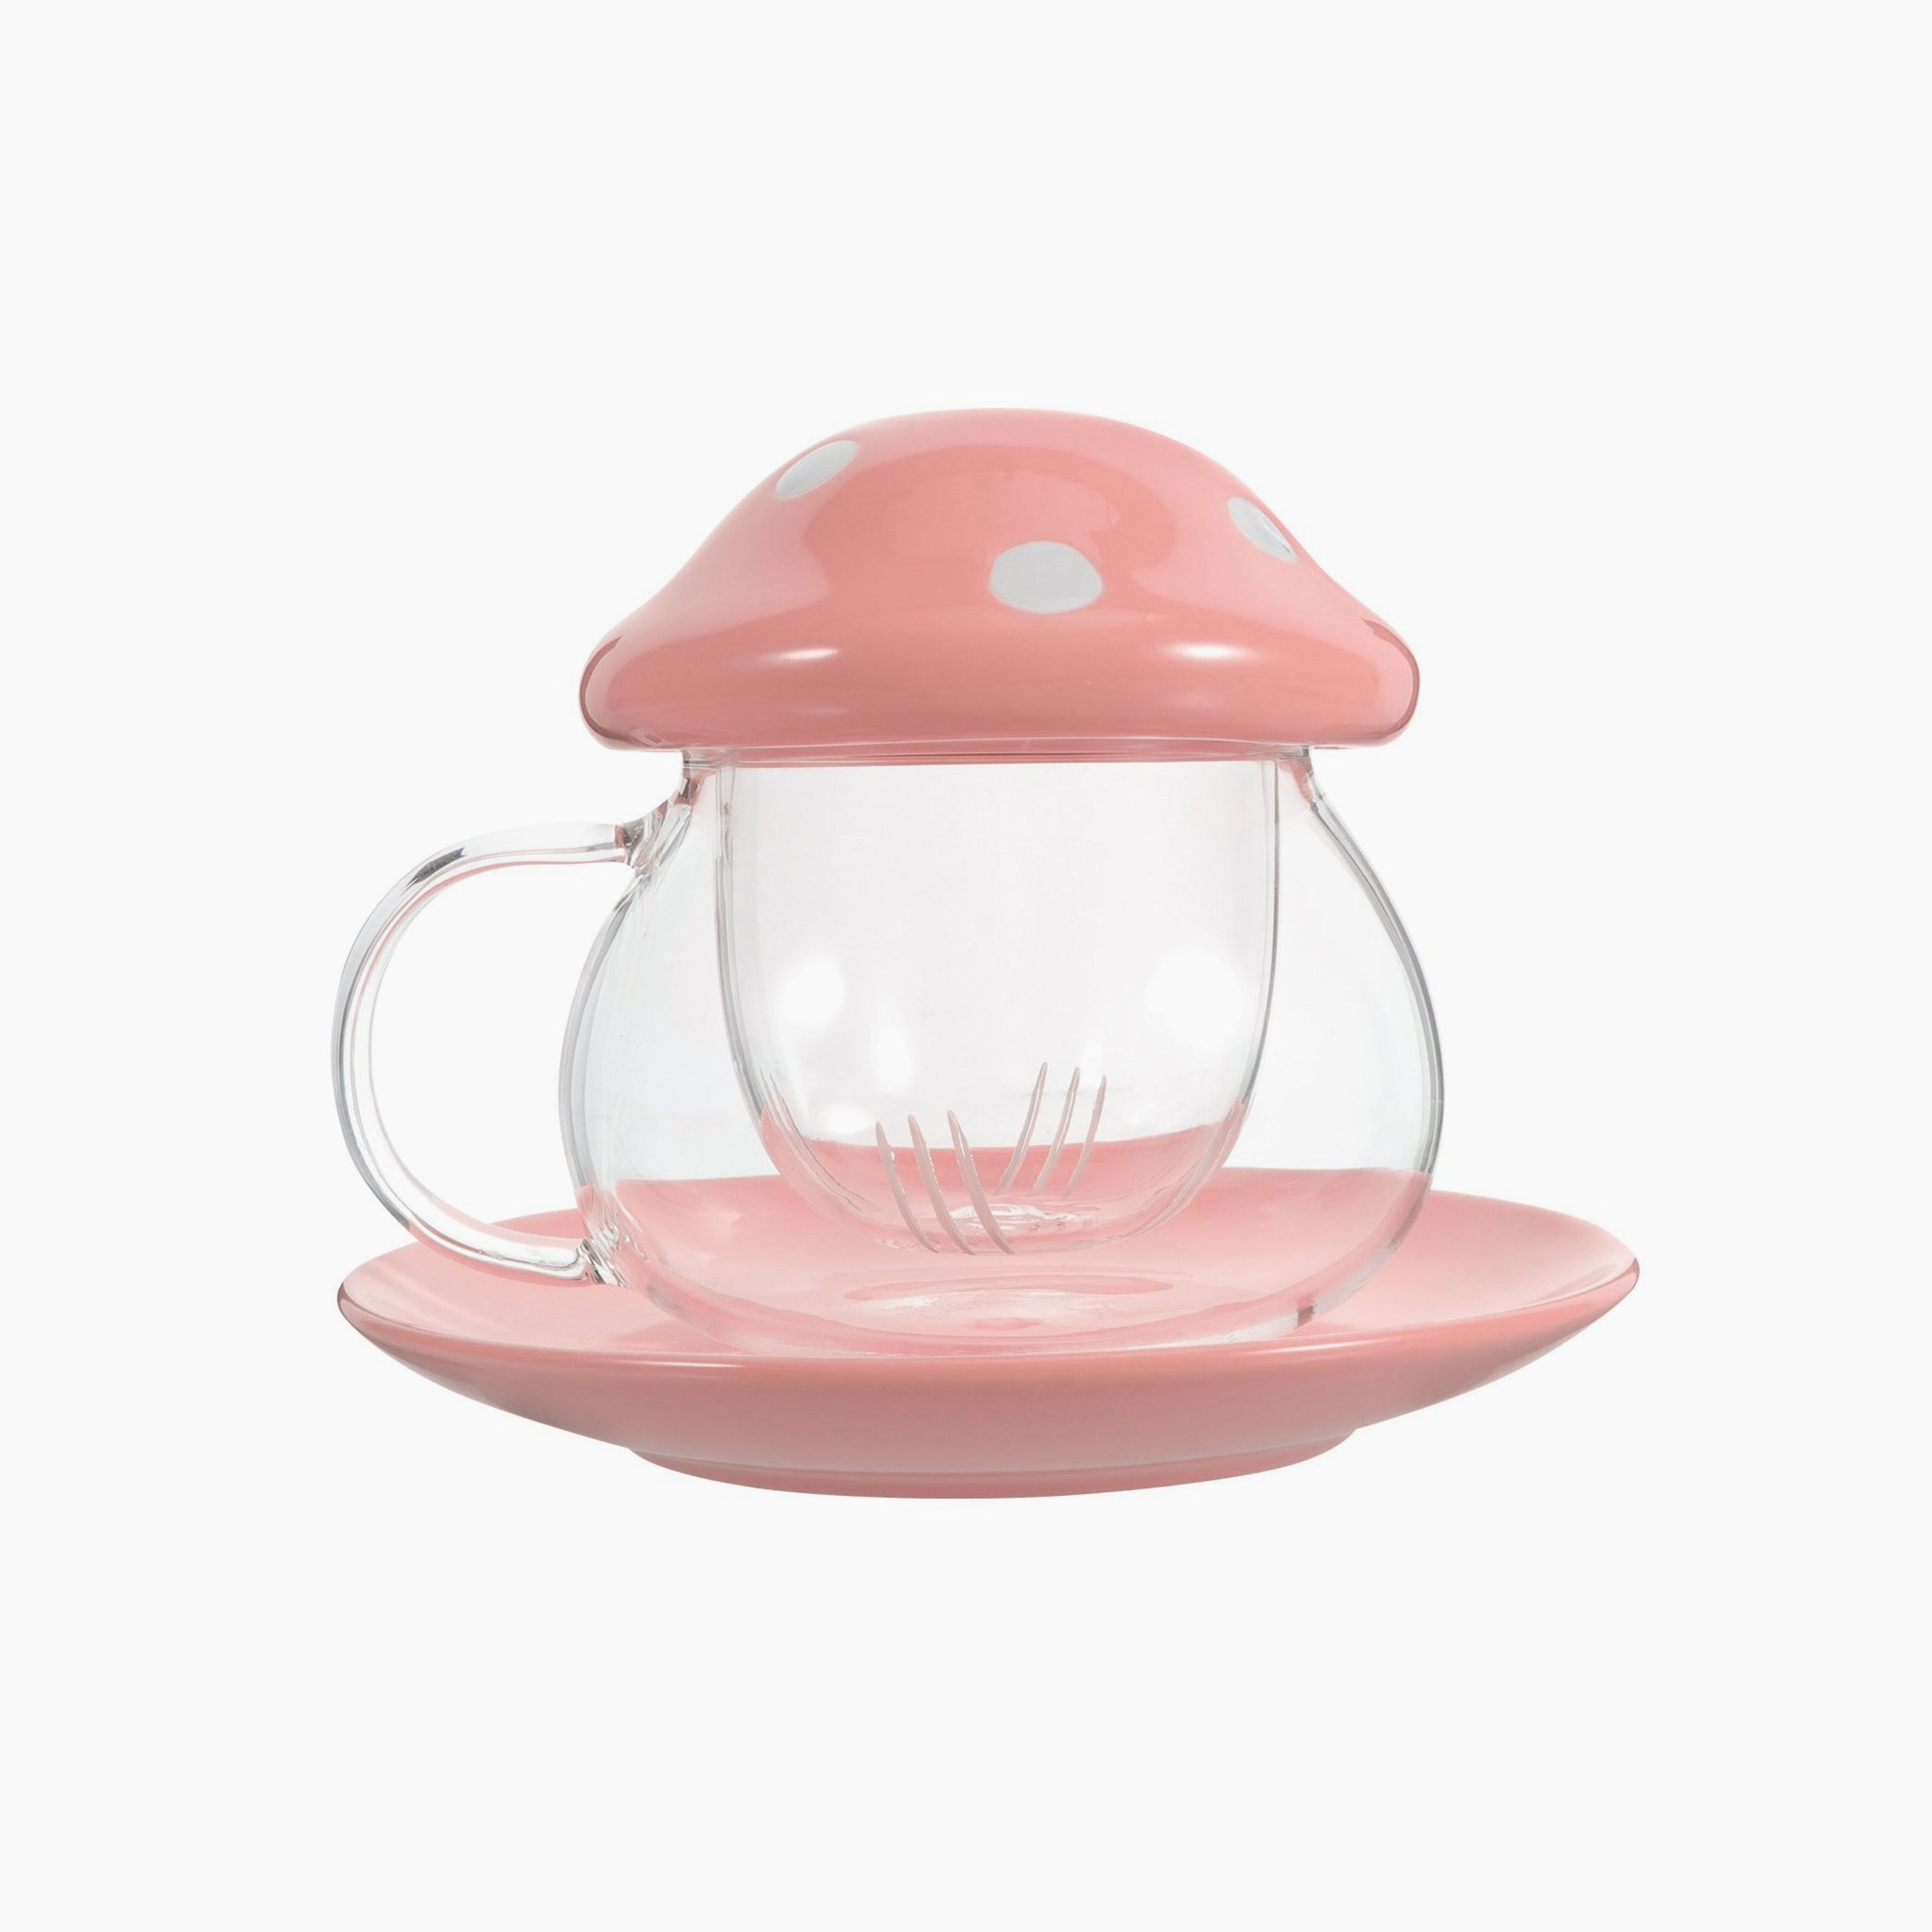 Mushroom Tea Infuser Glass - 10 OZ